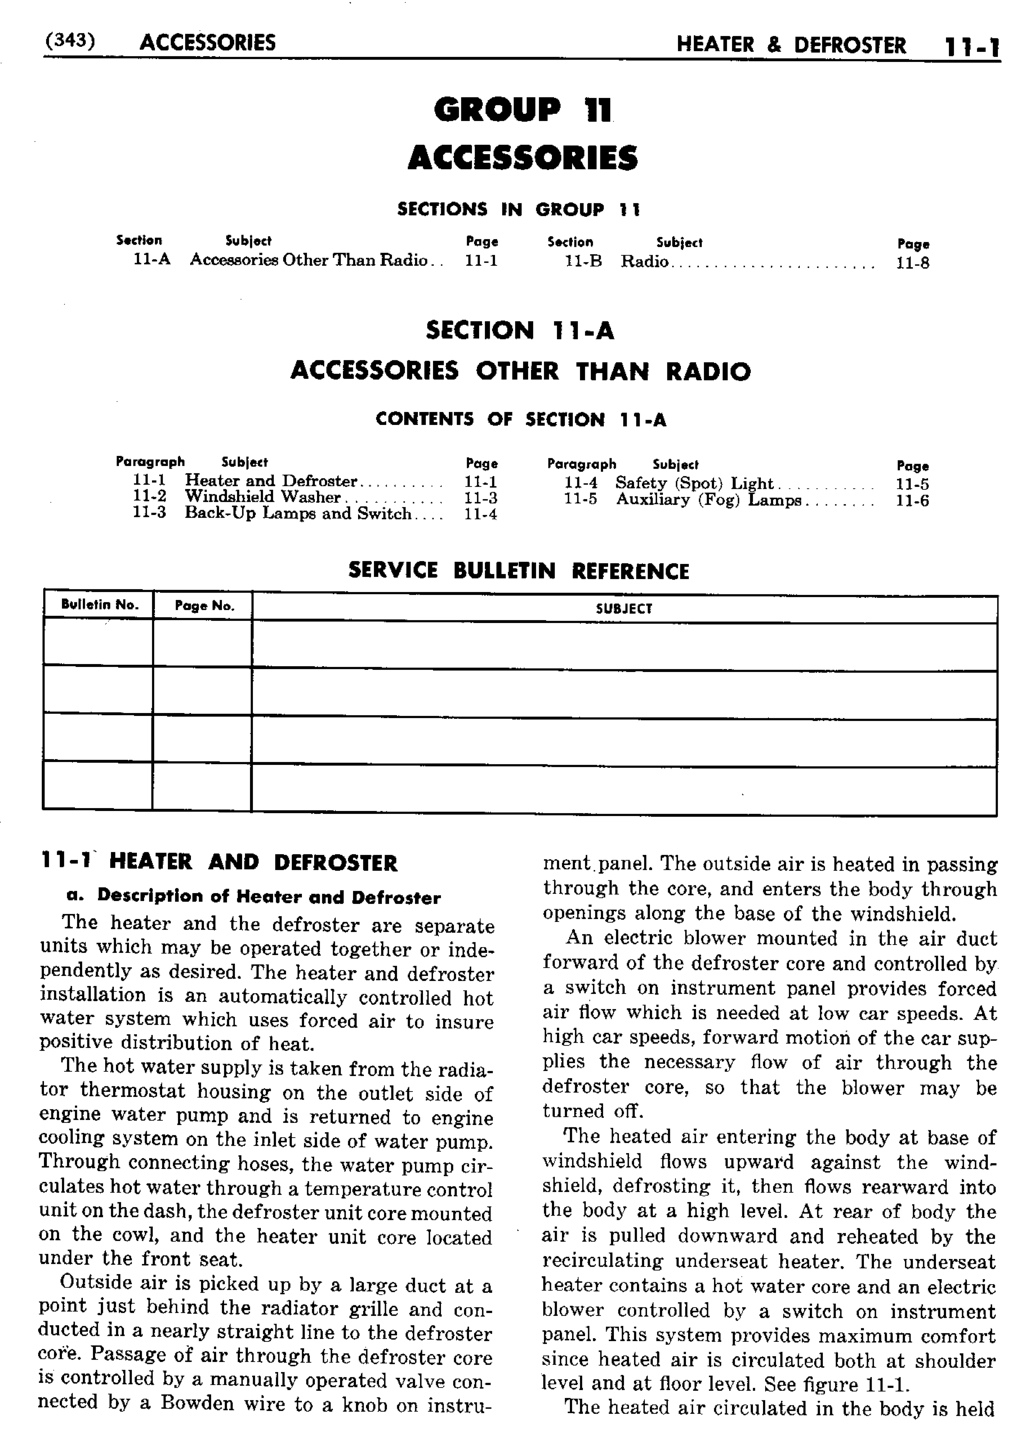 n_12 1950 Buick Shop Manual - Accessories-001-001.jpg